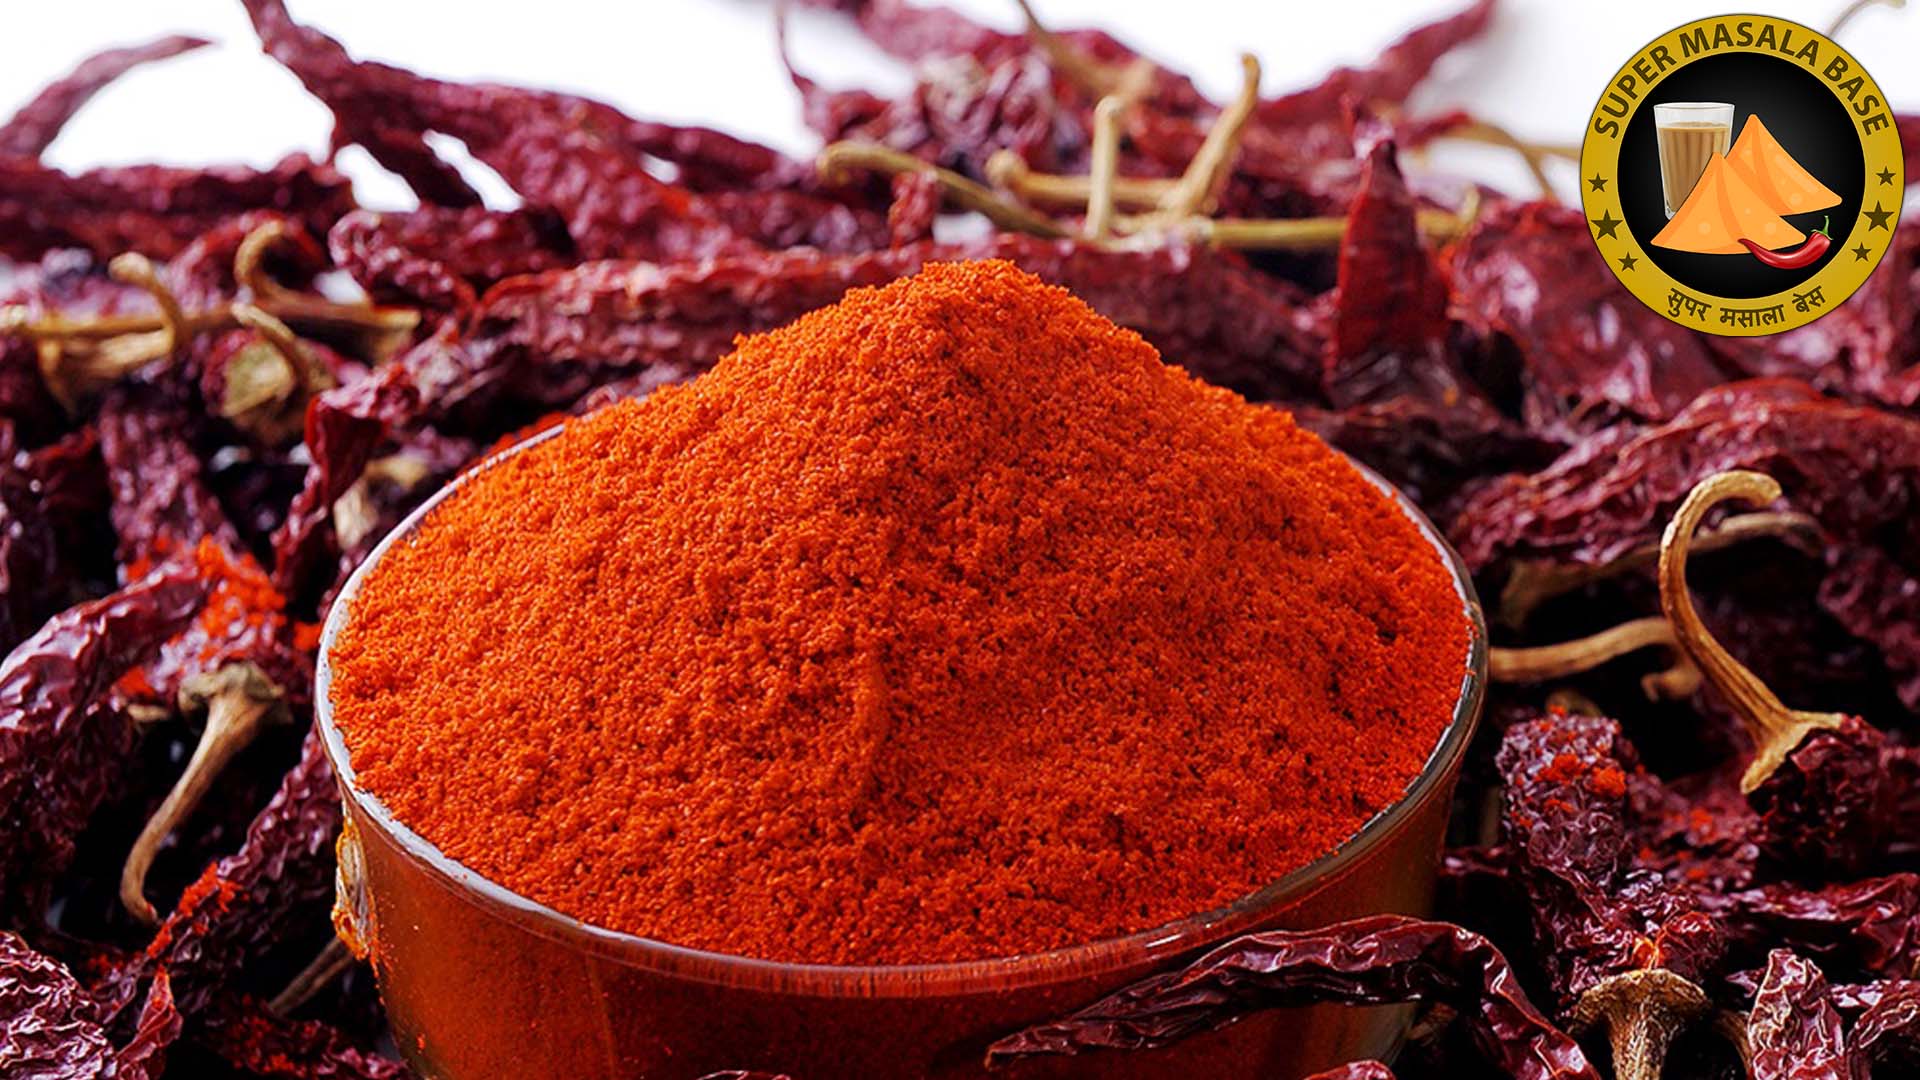 kashmiri laal mirch red chilli powder